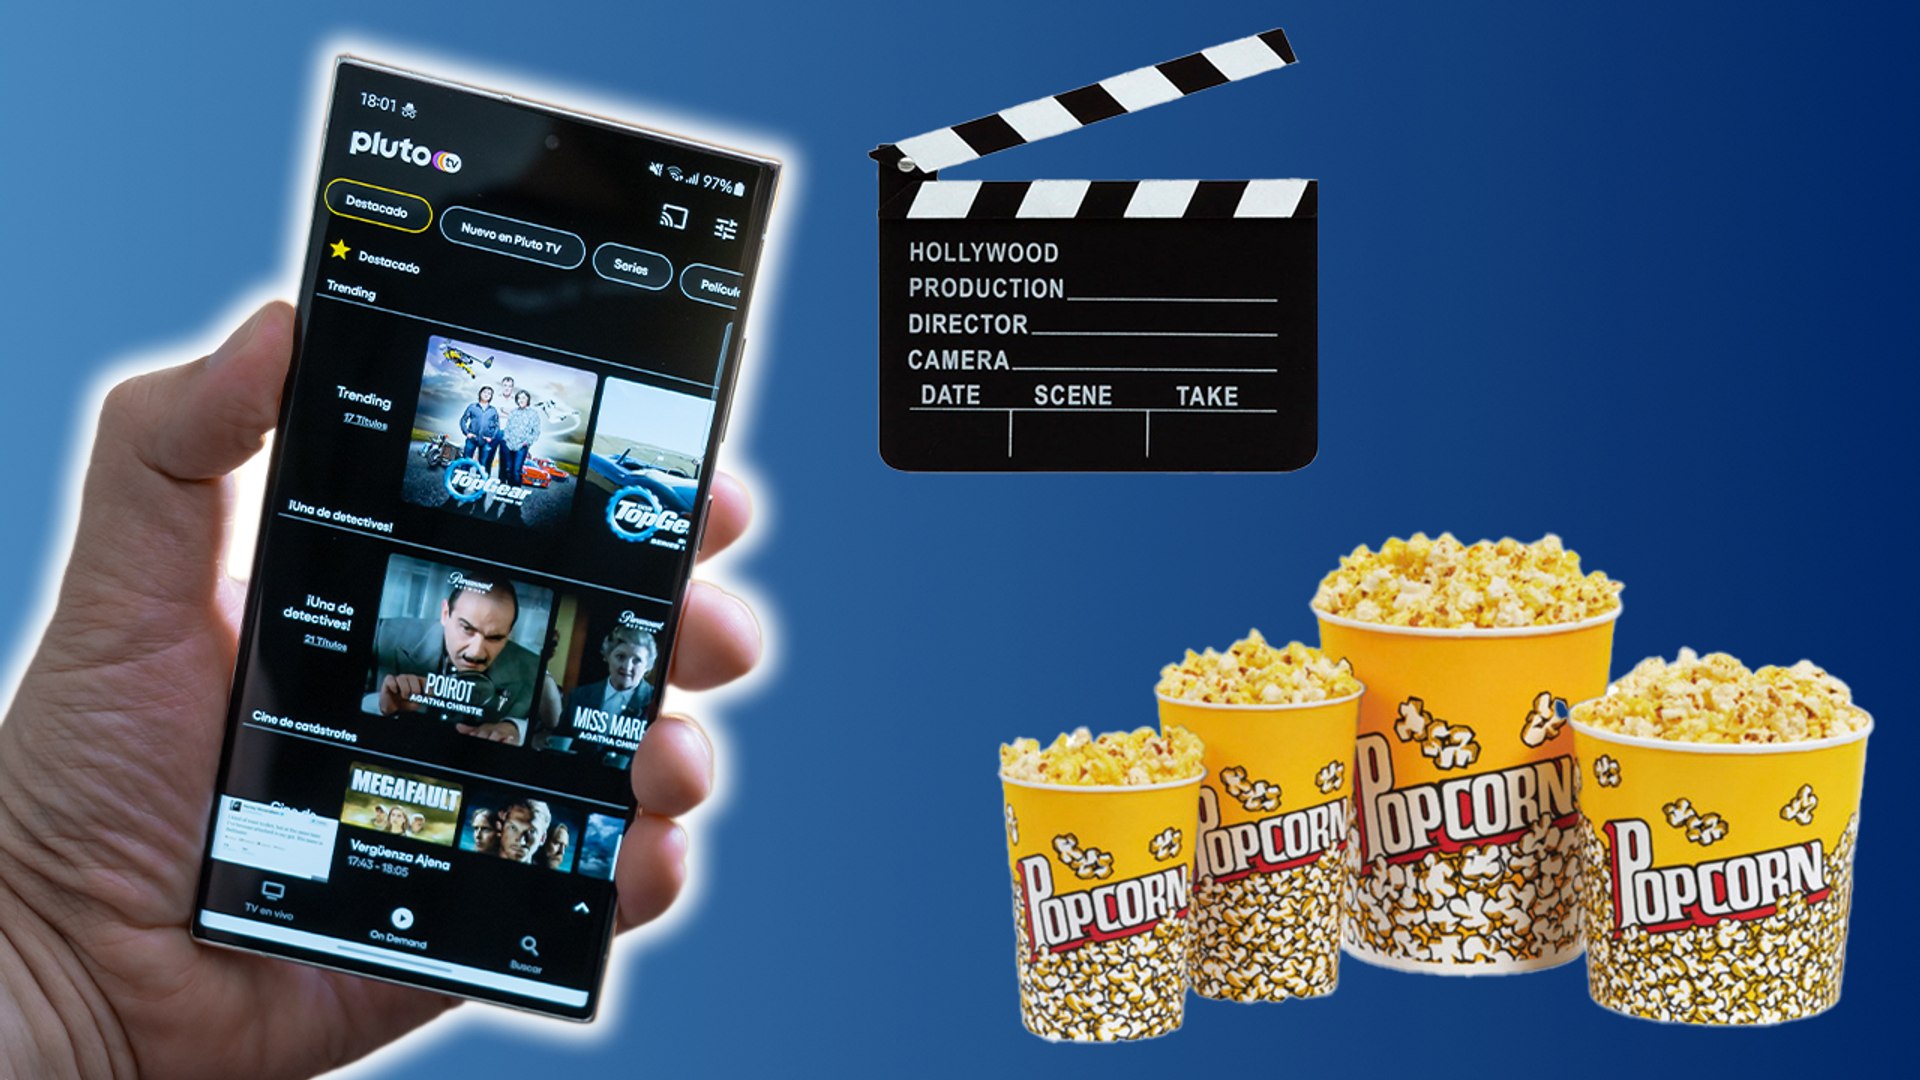 Ver películas y series gratis en el móvil: las mejores aplicaciones